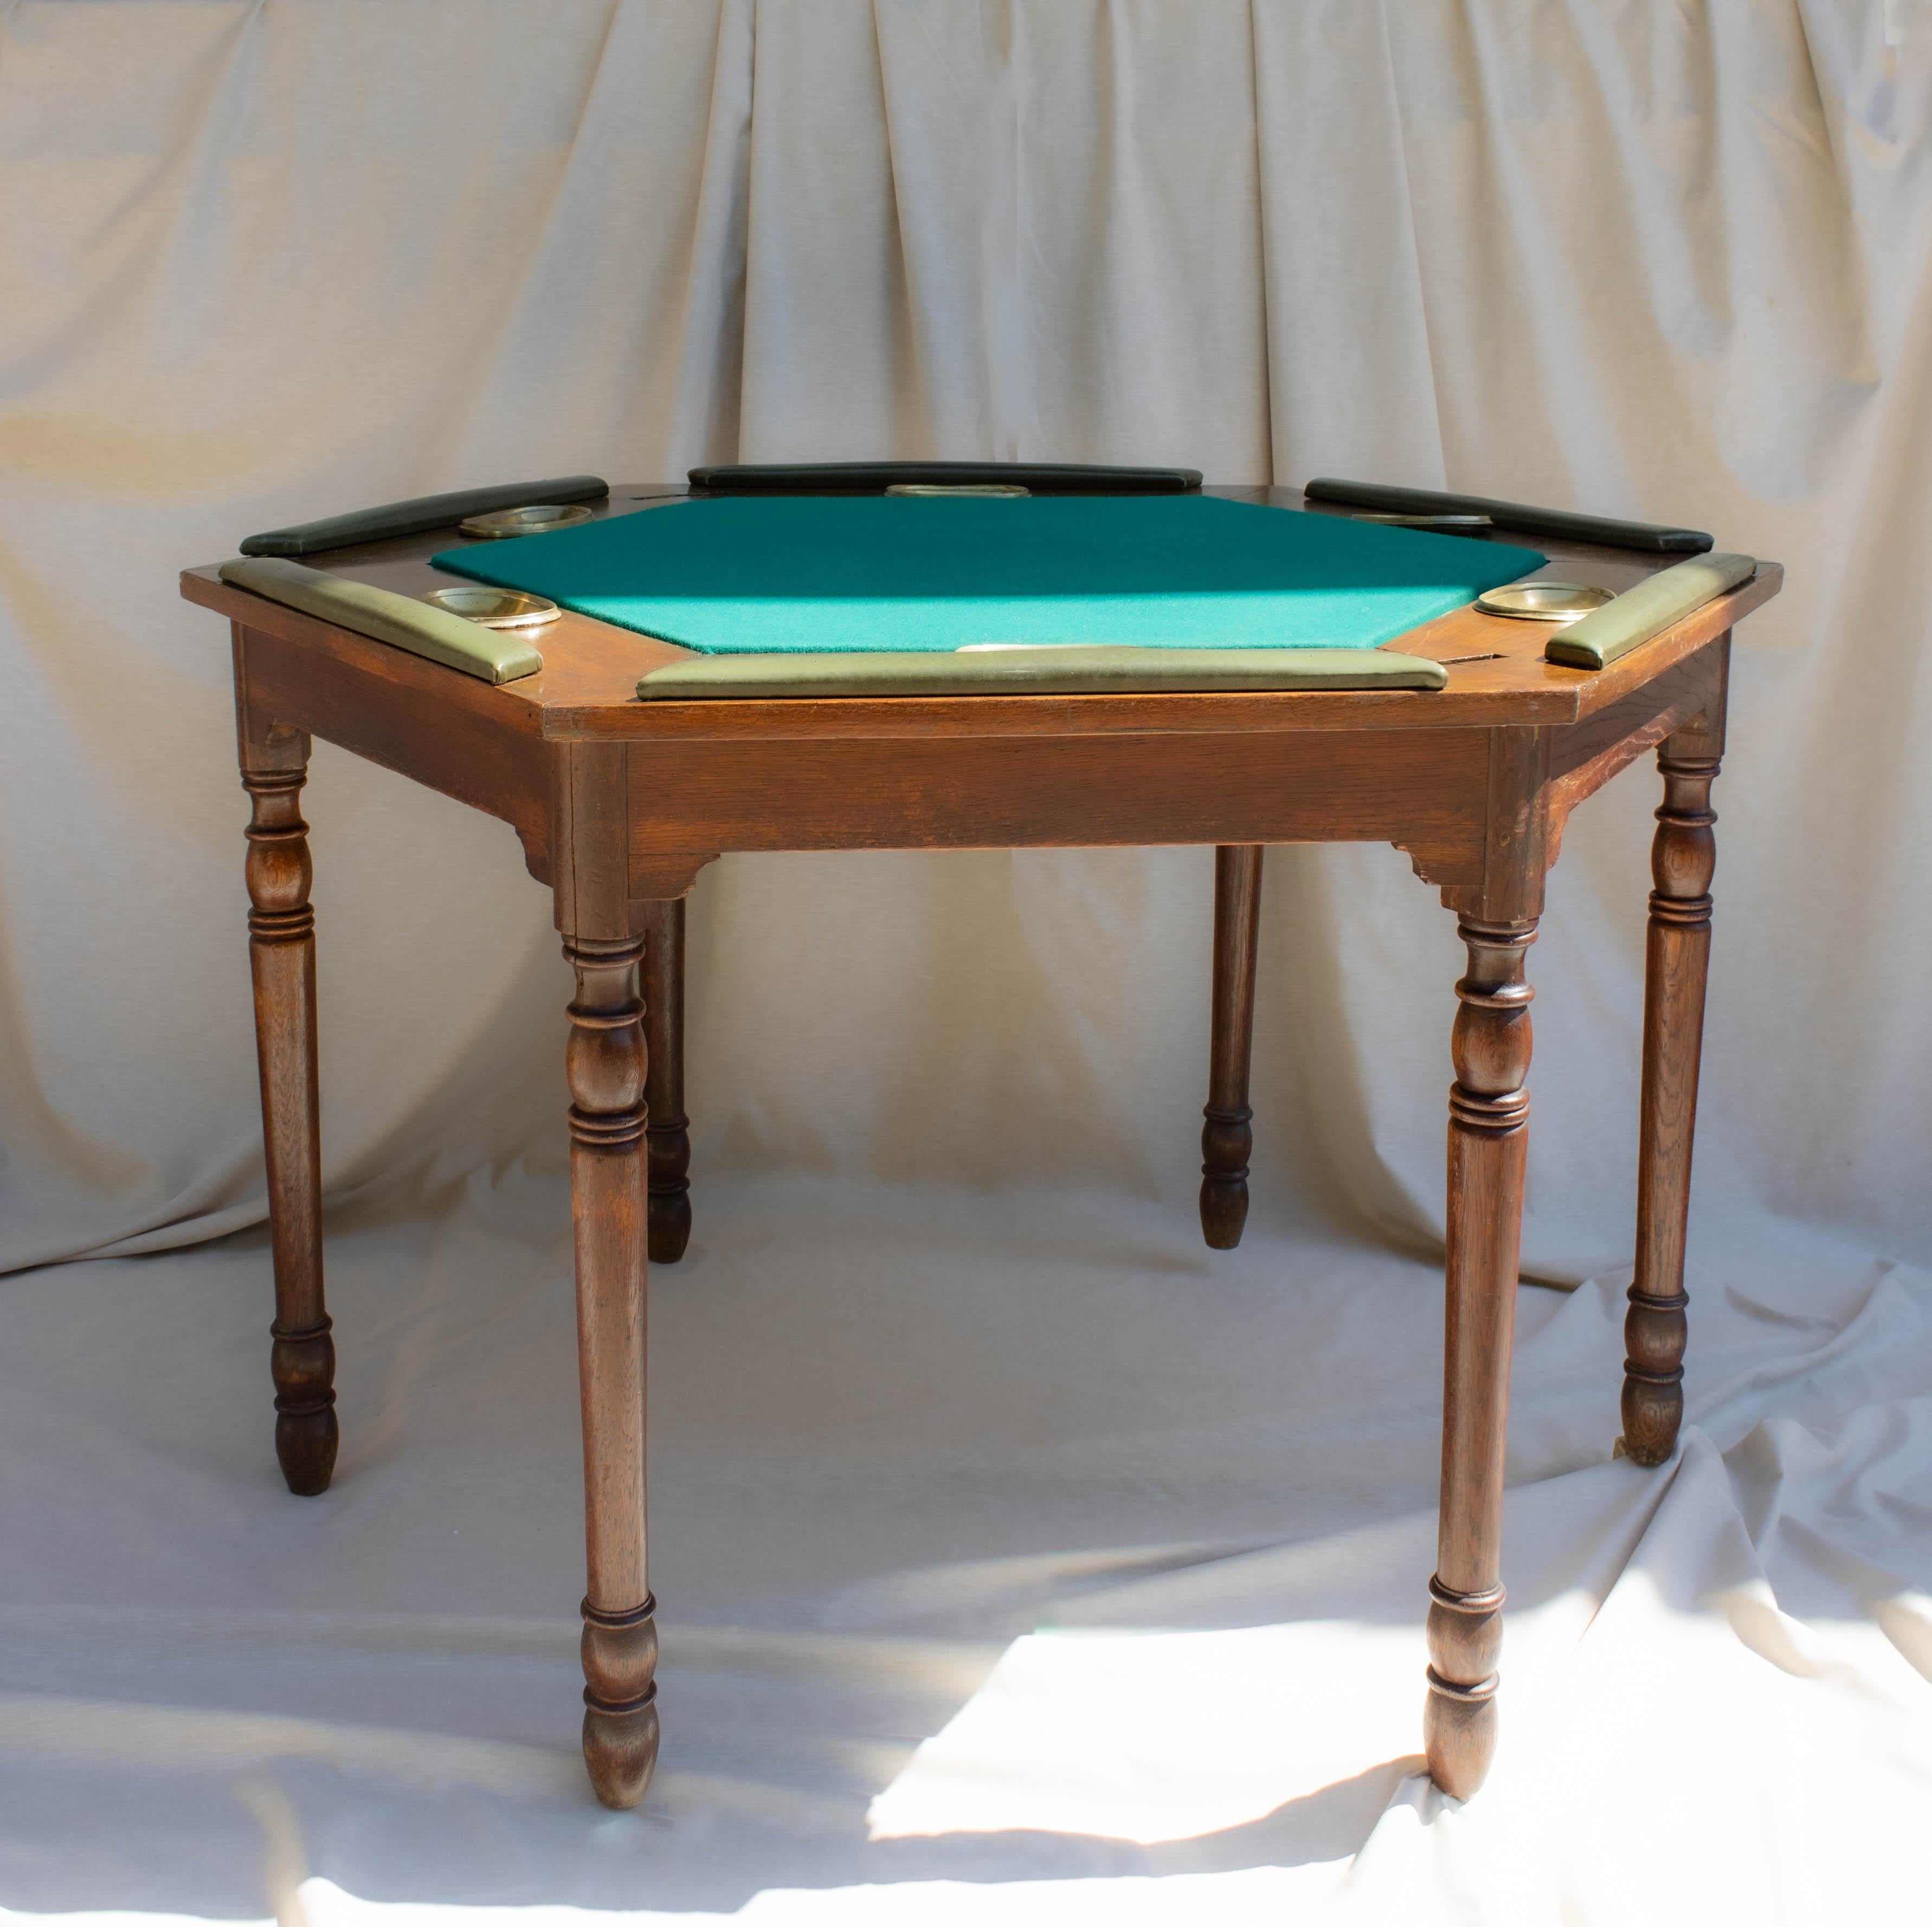 Hex Game Table ist ein sechseckiger Spieltisch mit Holzschnitzereien, grüner Filzplatte und Aschenbechern aus goldener Bronze. Die Armlehnen aus grünem Leder sorgen für mehr Komfort beim Spielen. Bei diesem Tisch handelt es sich um ein antikes Stück